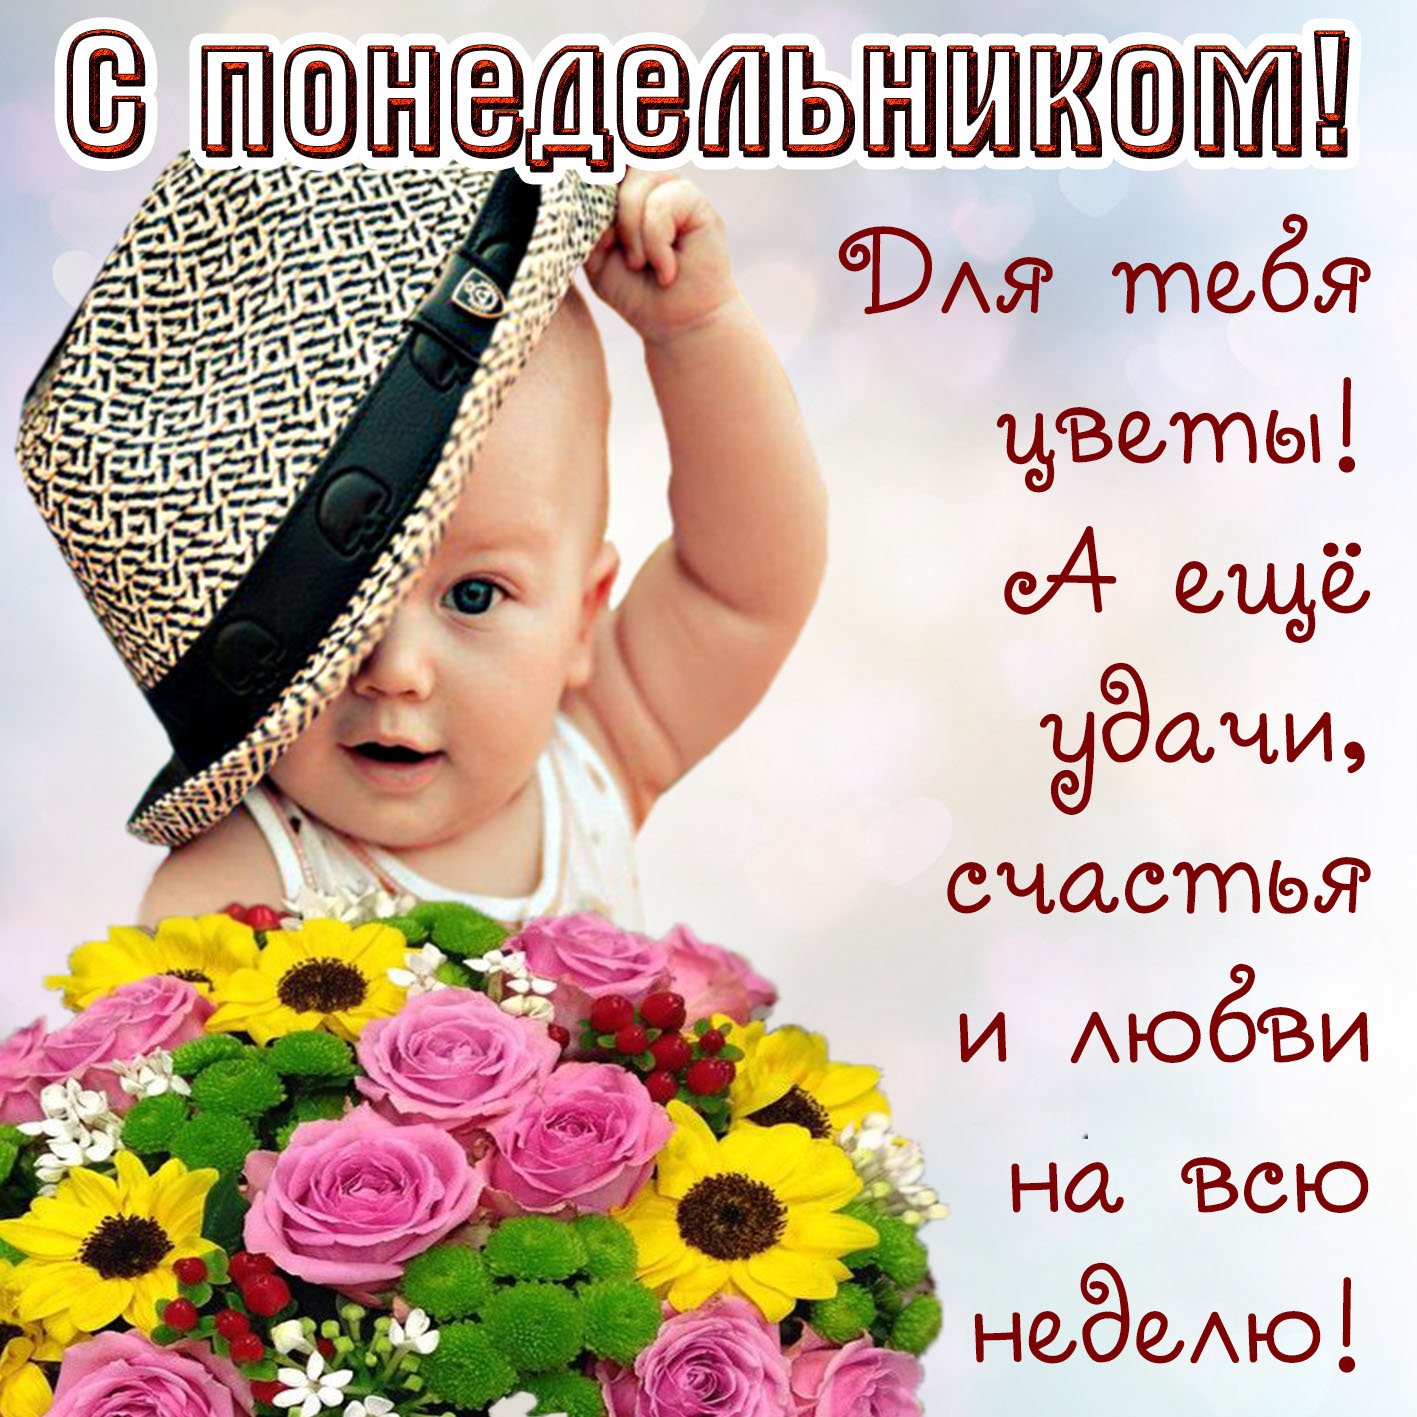 Младенец в шляпе держит большой букет цветов, на изображении надпись С понедельником! Для тебя улыбки! А ещё удачи, счастья и любви на всю неделю!